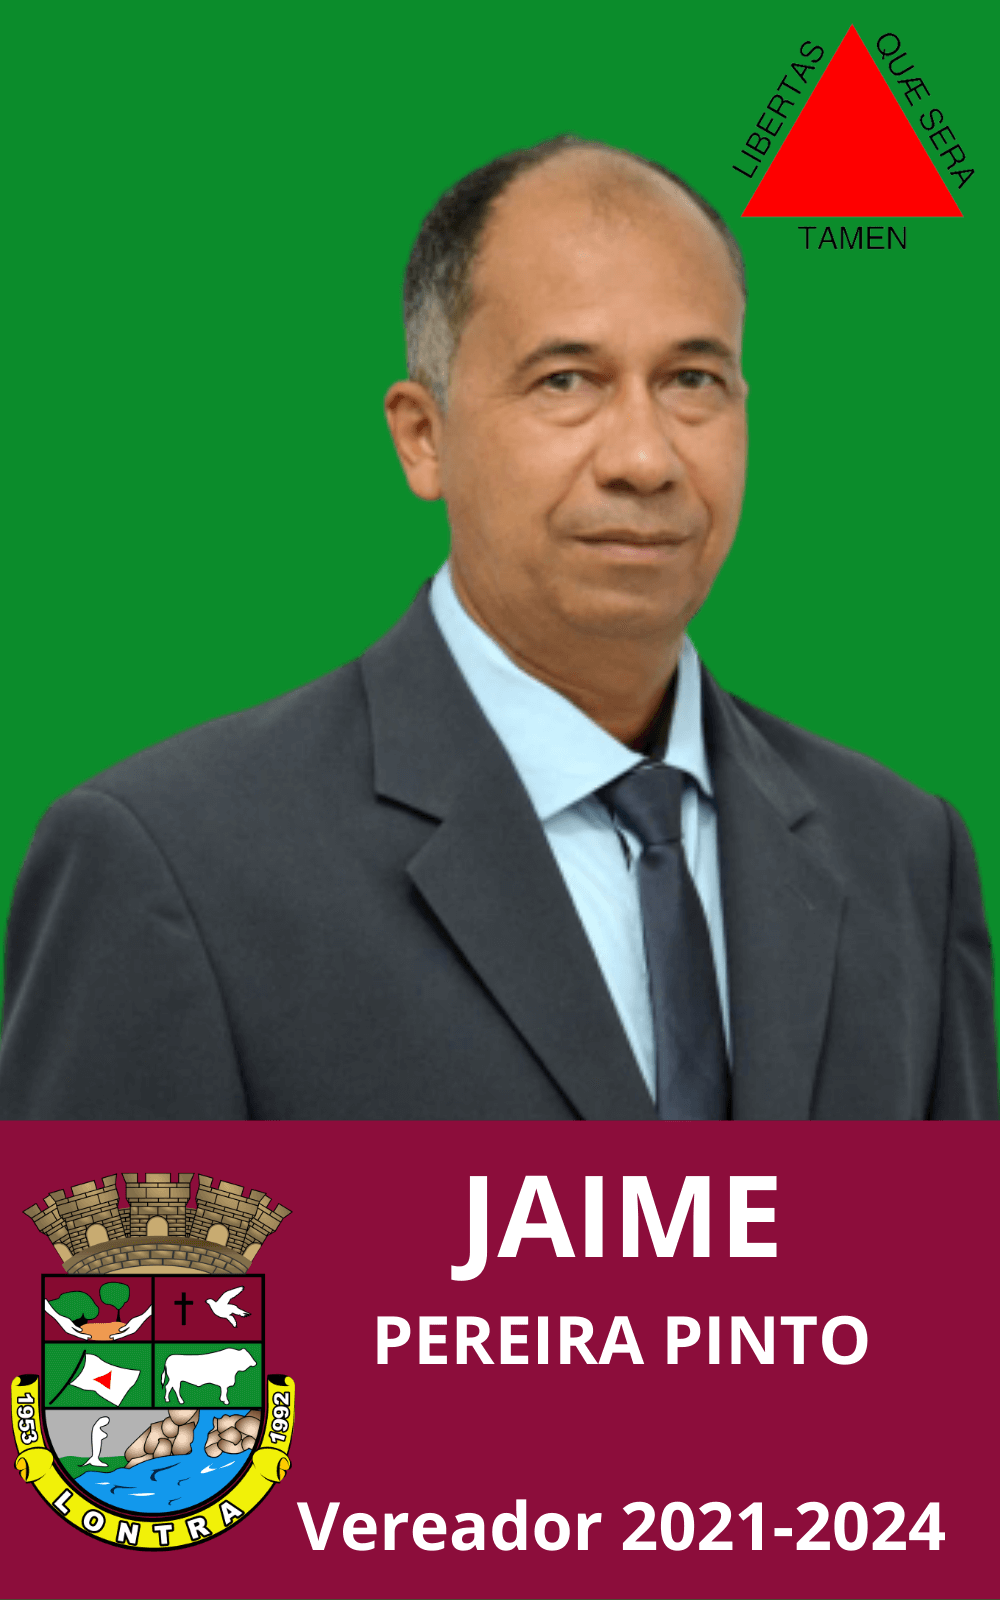 Jaime Pereira Pinto